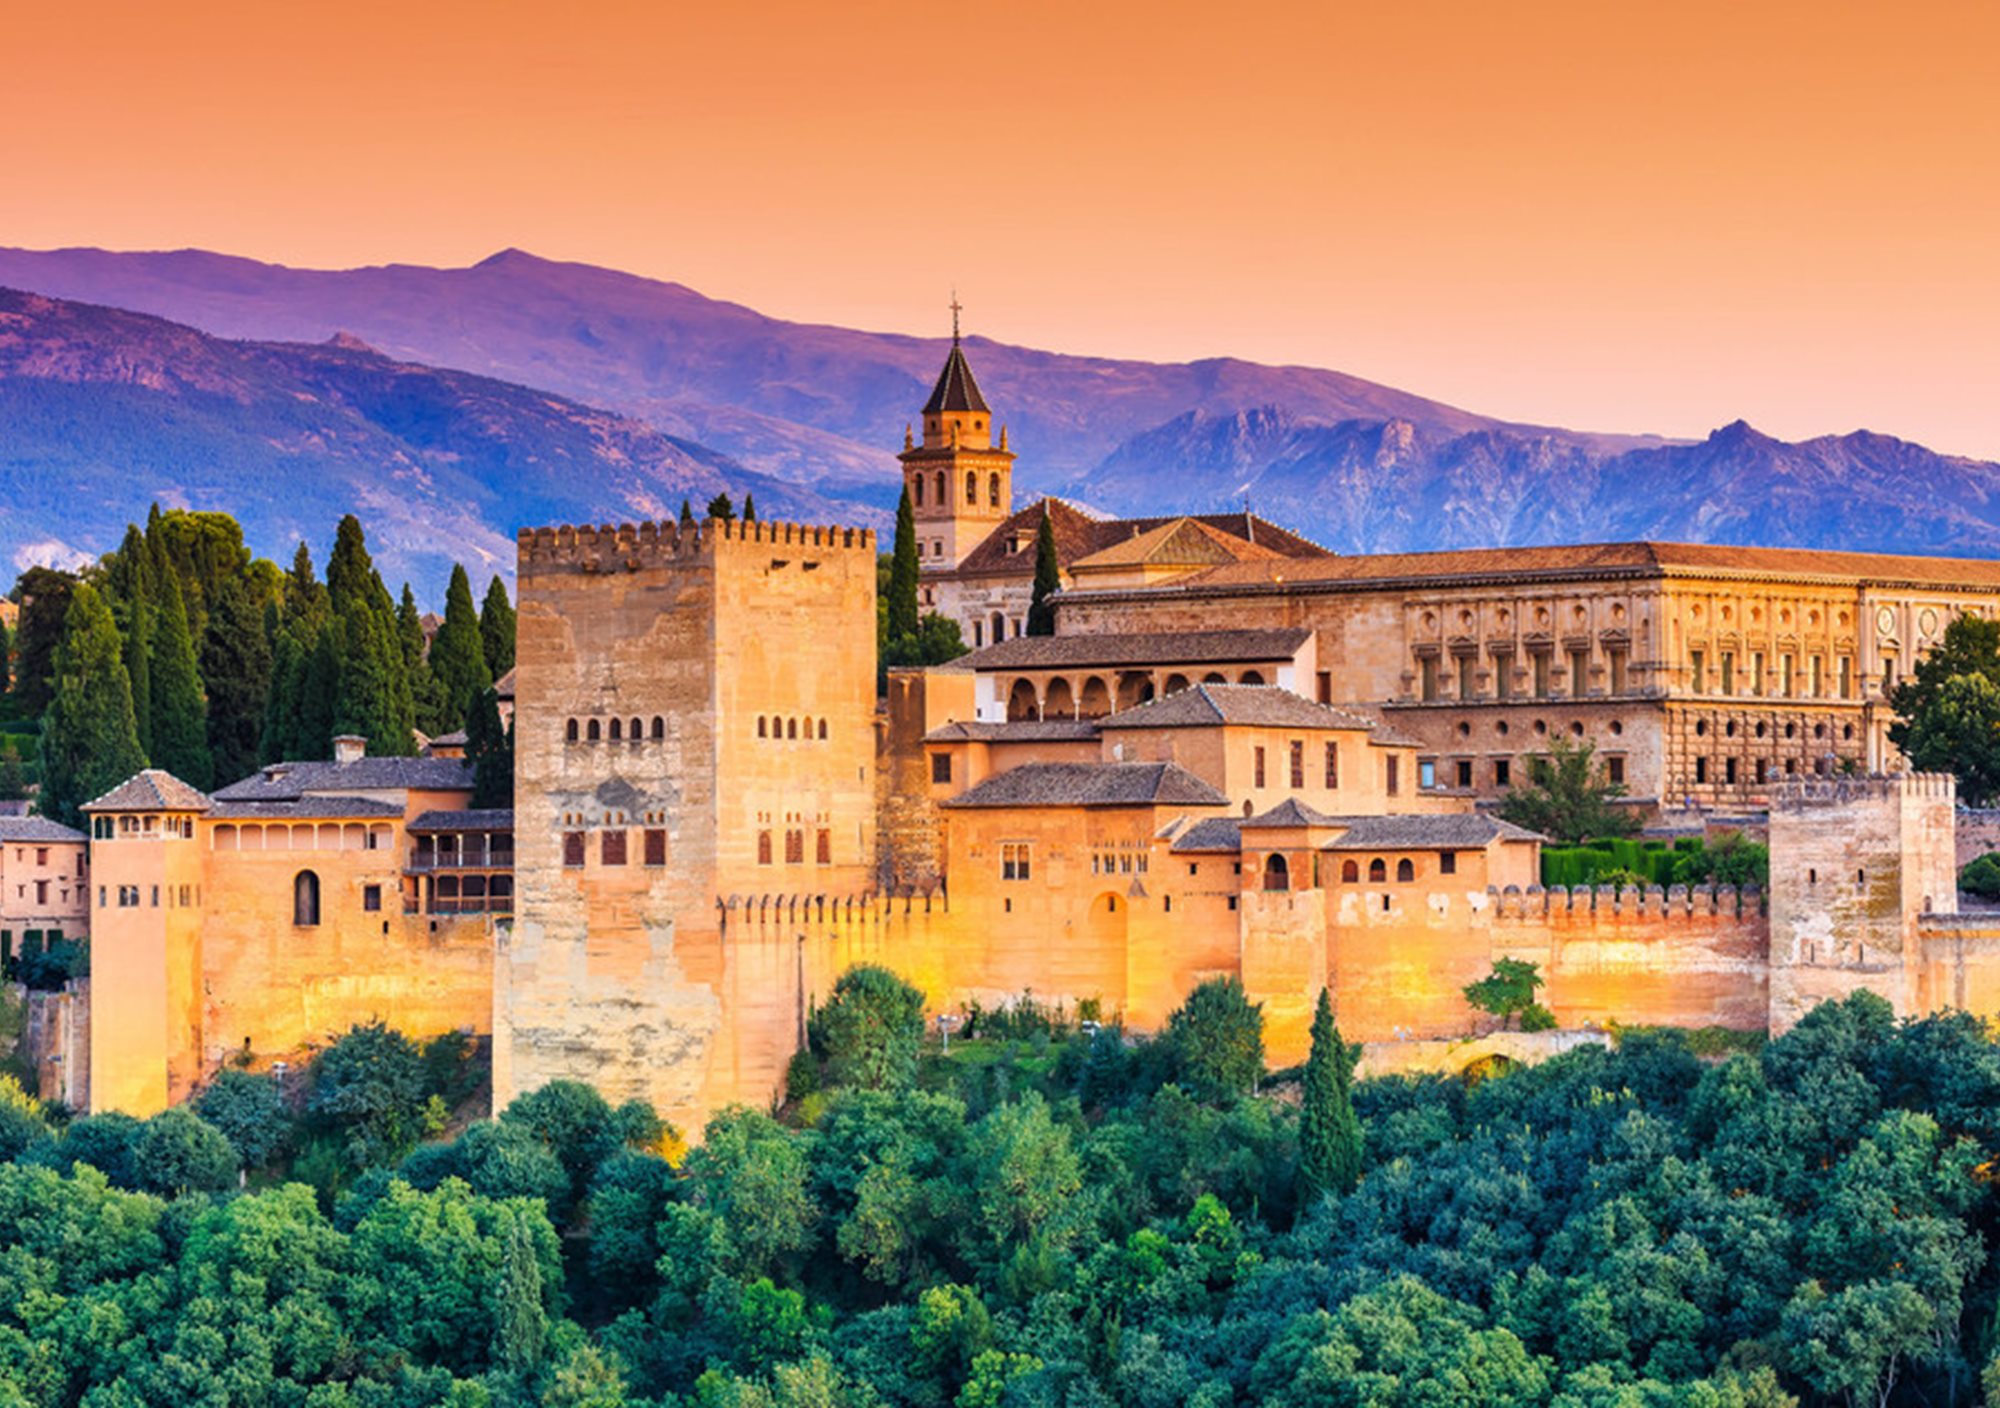 visitar Alhambra y Granada desde Sevilla en privado, visitas guiadas privadas a Alhambra y Granada desde Sevilla, tours privados Alhambra y Granada desde Sevilla, excursiones con guía privado a la Alhambra y Granada con coche desde Sevilla